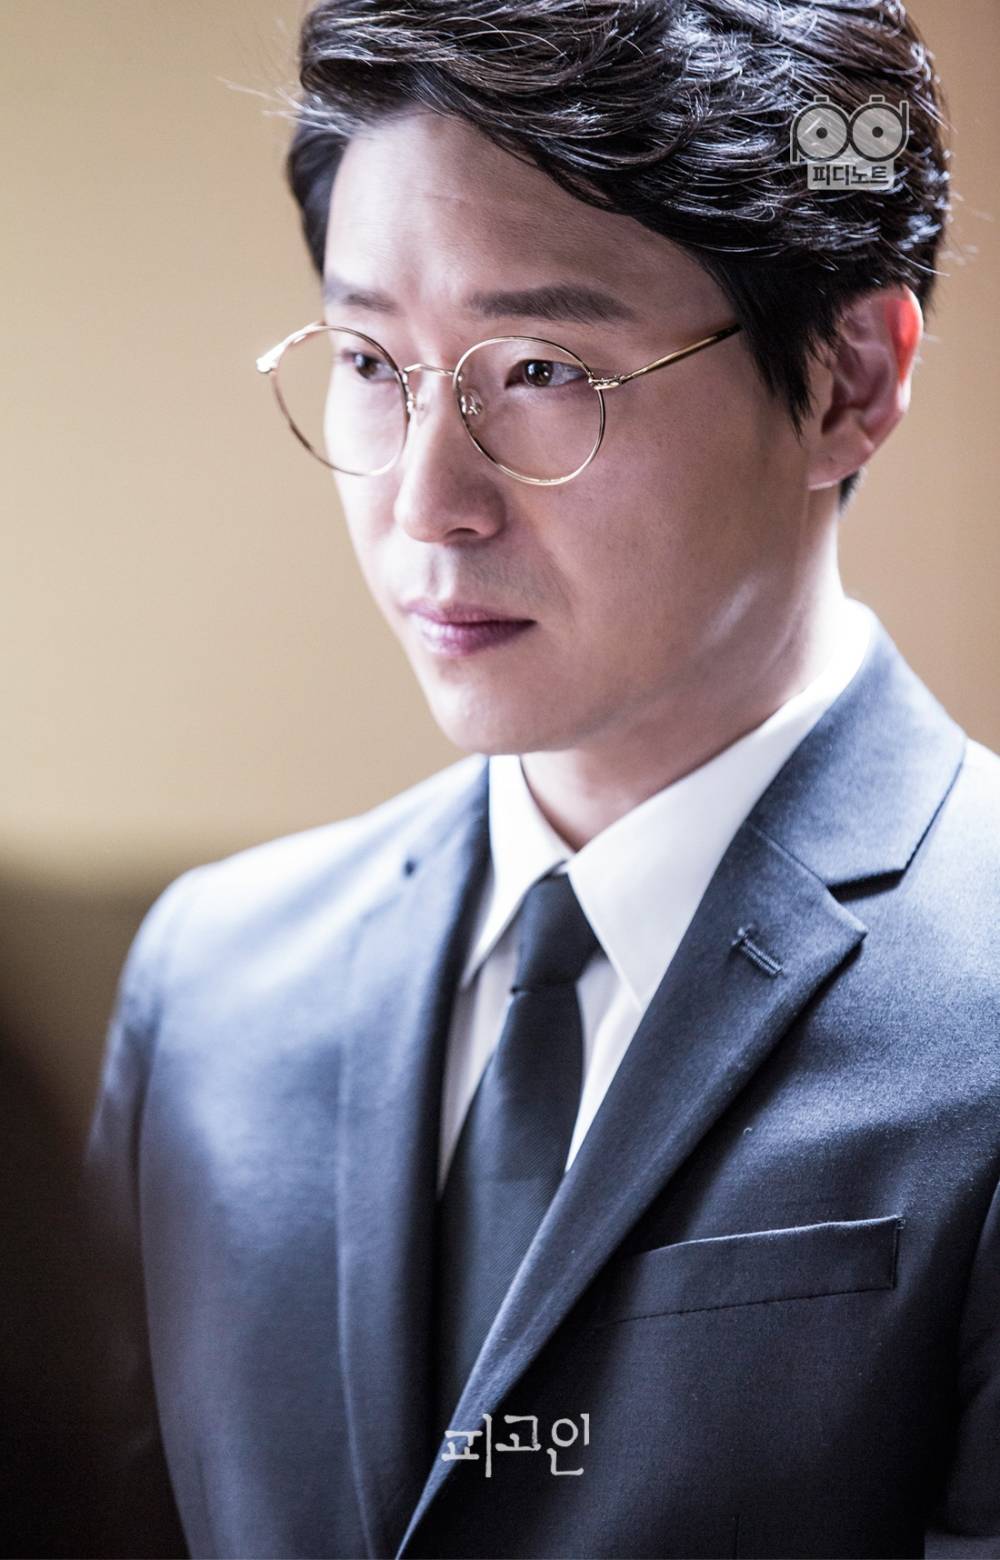 韩国演员严基俊举行非公开婚礼 曾在《顶楼》中饰演朱丹泰